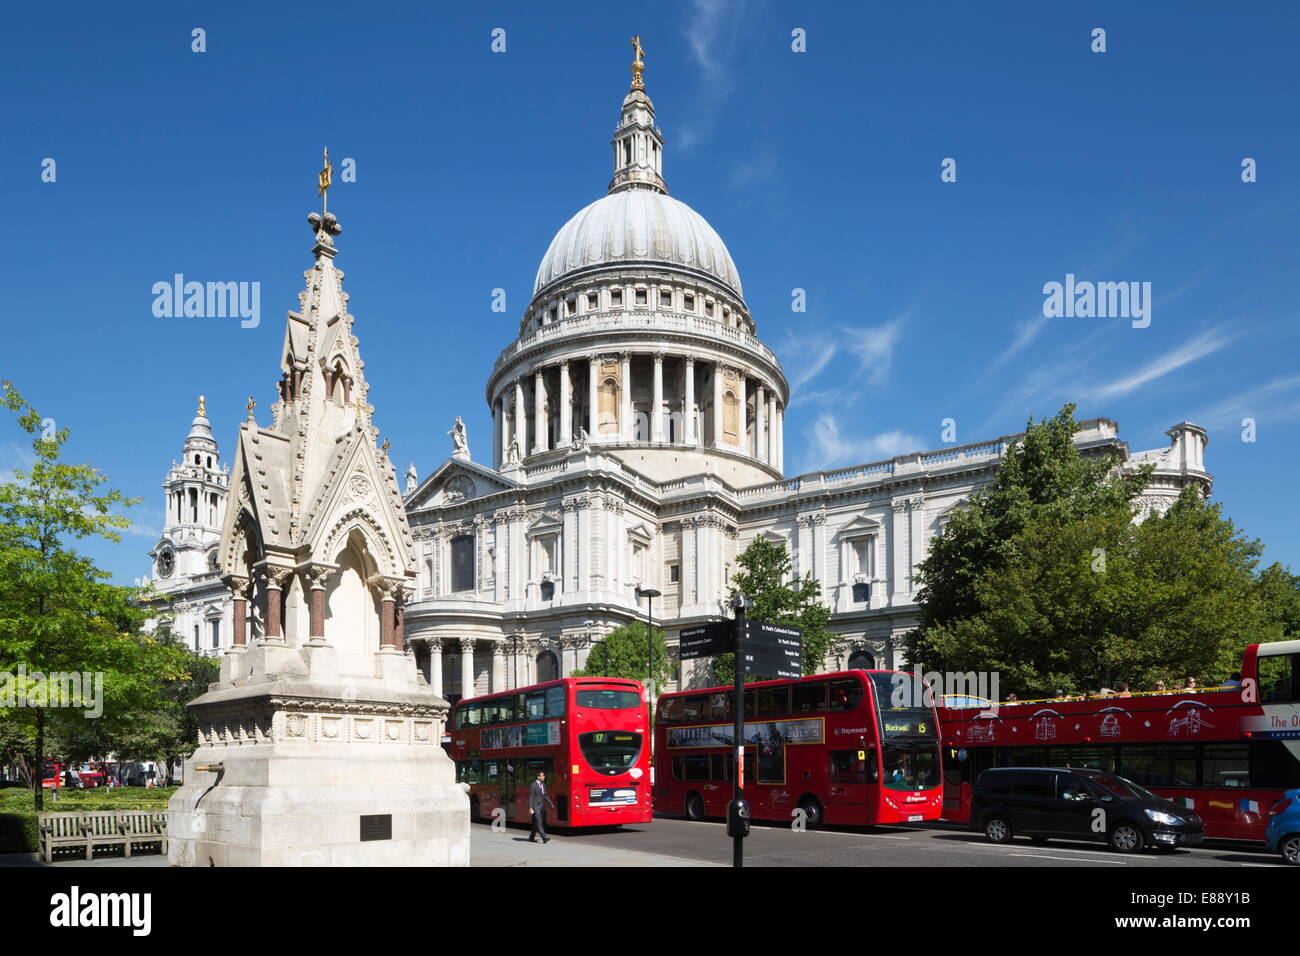 Les bus rouges et la Cathédrale St Paul, Londres, Angleterre, Royaume-Uni, Europe Banque D'Images